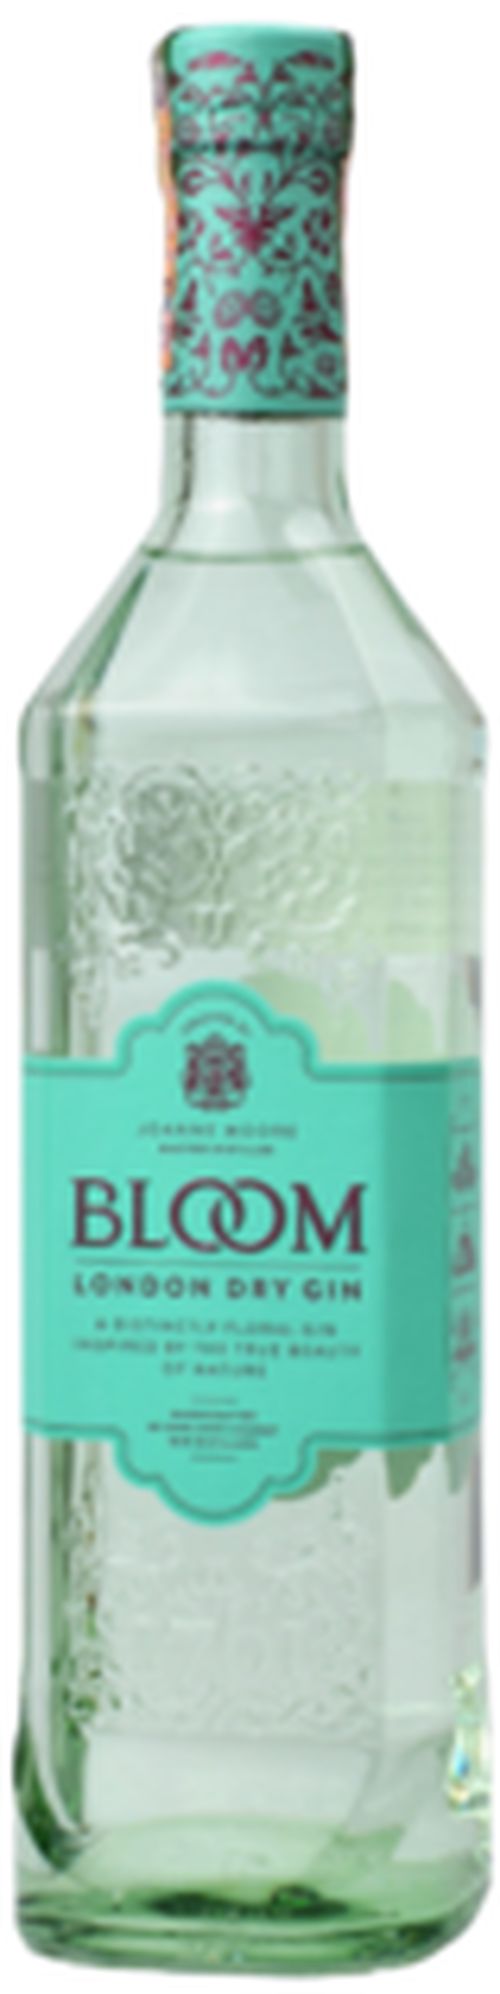 Bloom 40% 0,7L